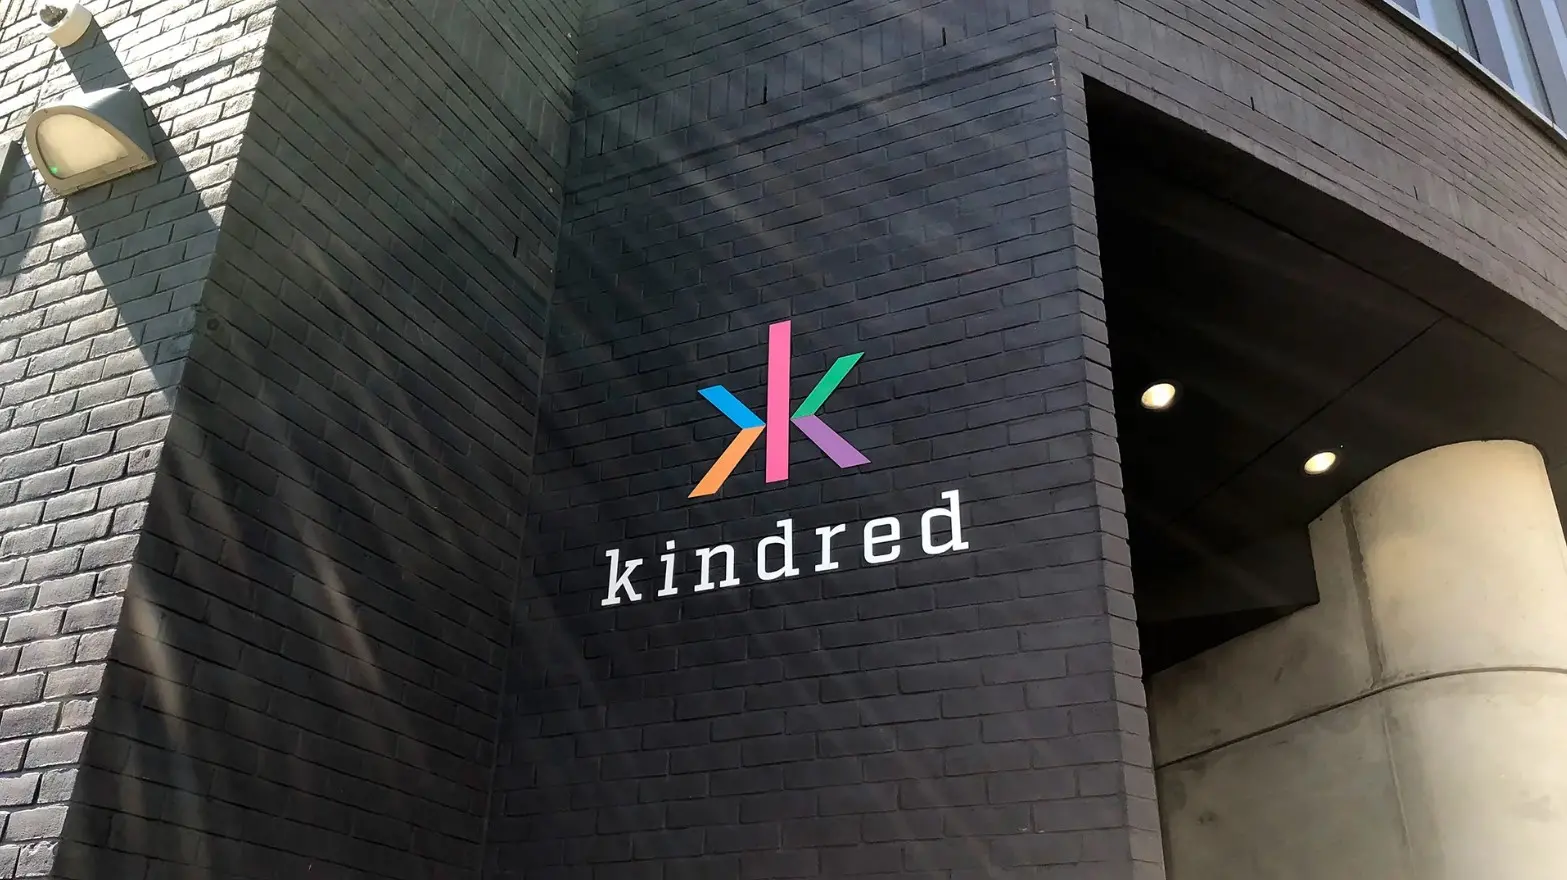 A Kindred Group együttműködik svéd szolgáltatókkal a szerencsejátékokkal kapcsolatos problémák megoldásában